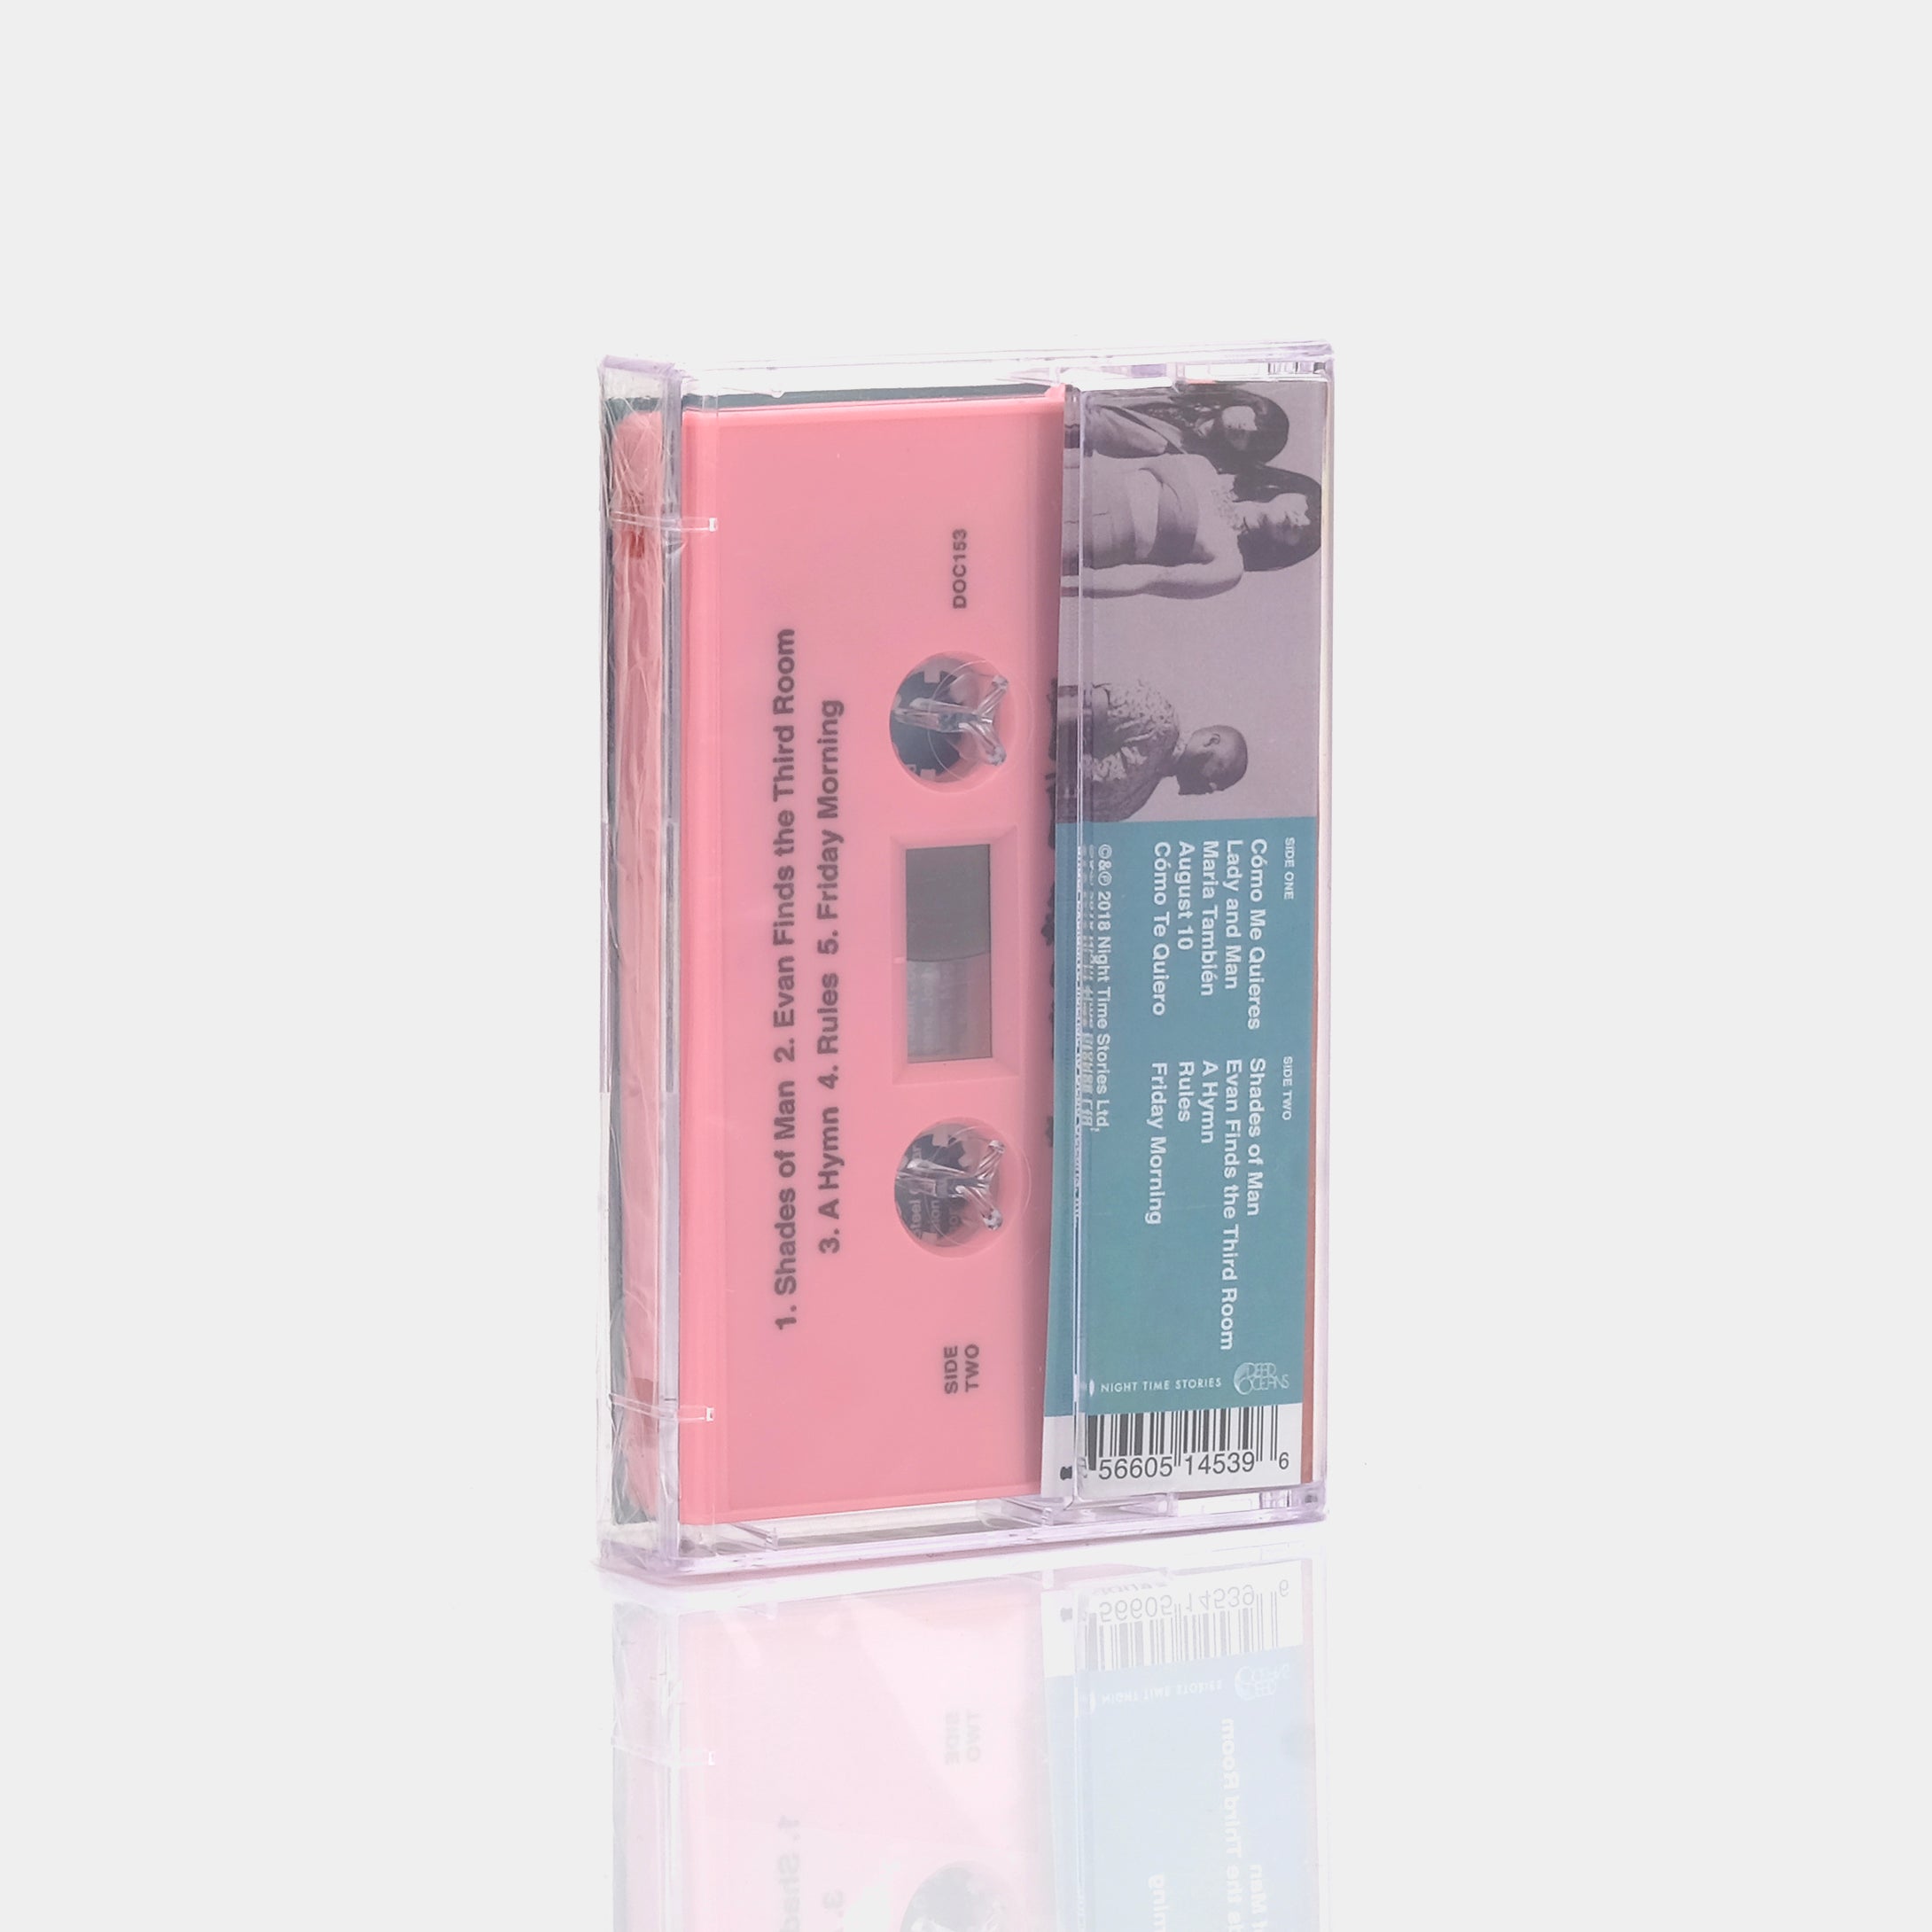 Khruangbin - Con Todo El Mundo Cassette Tape